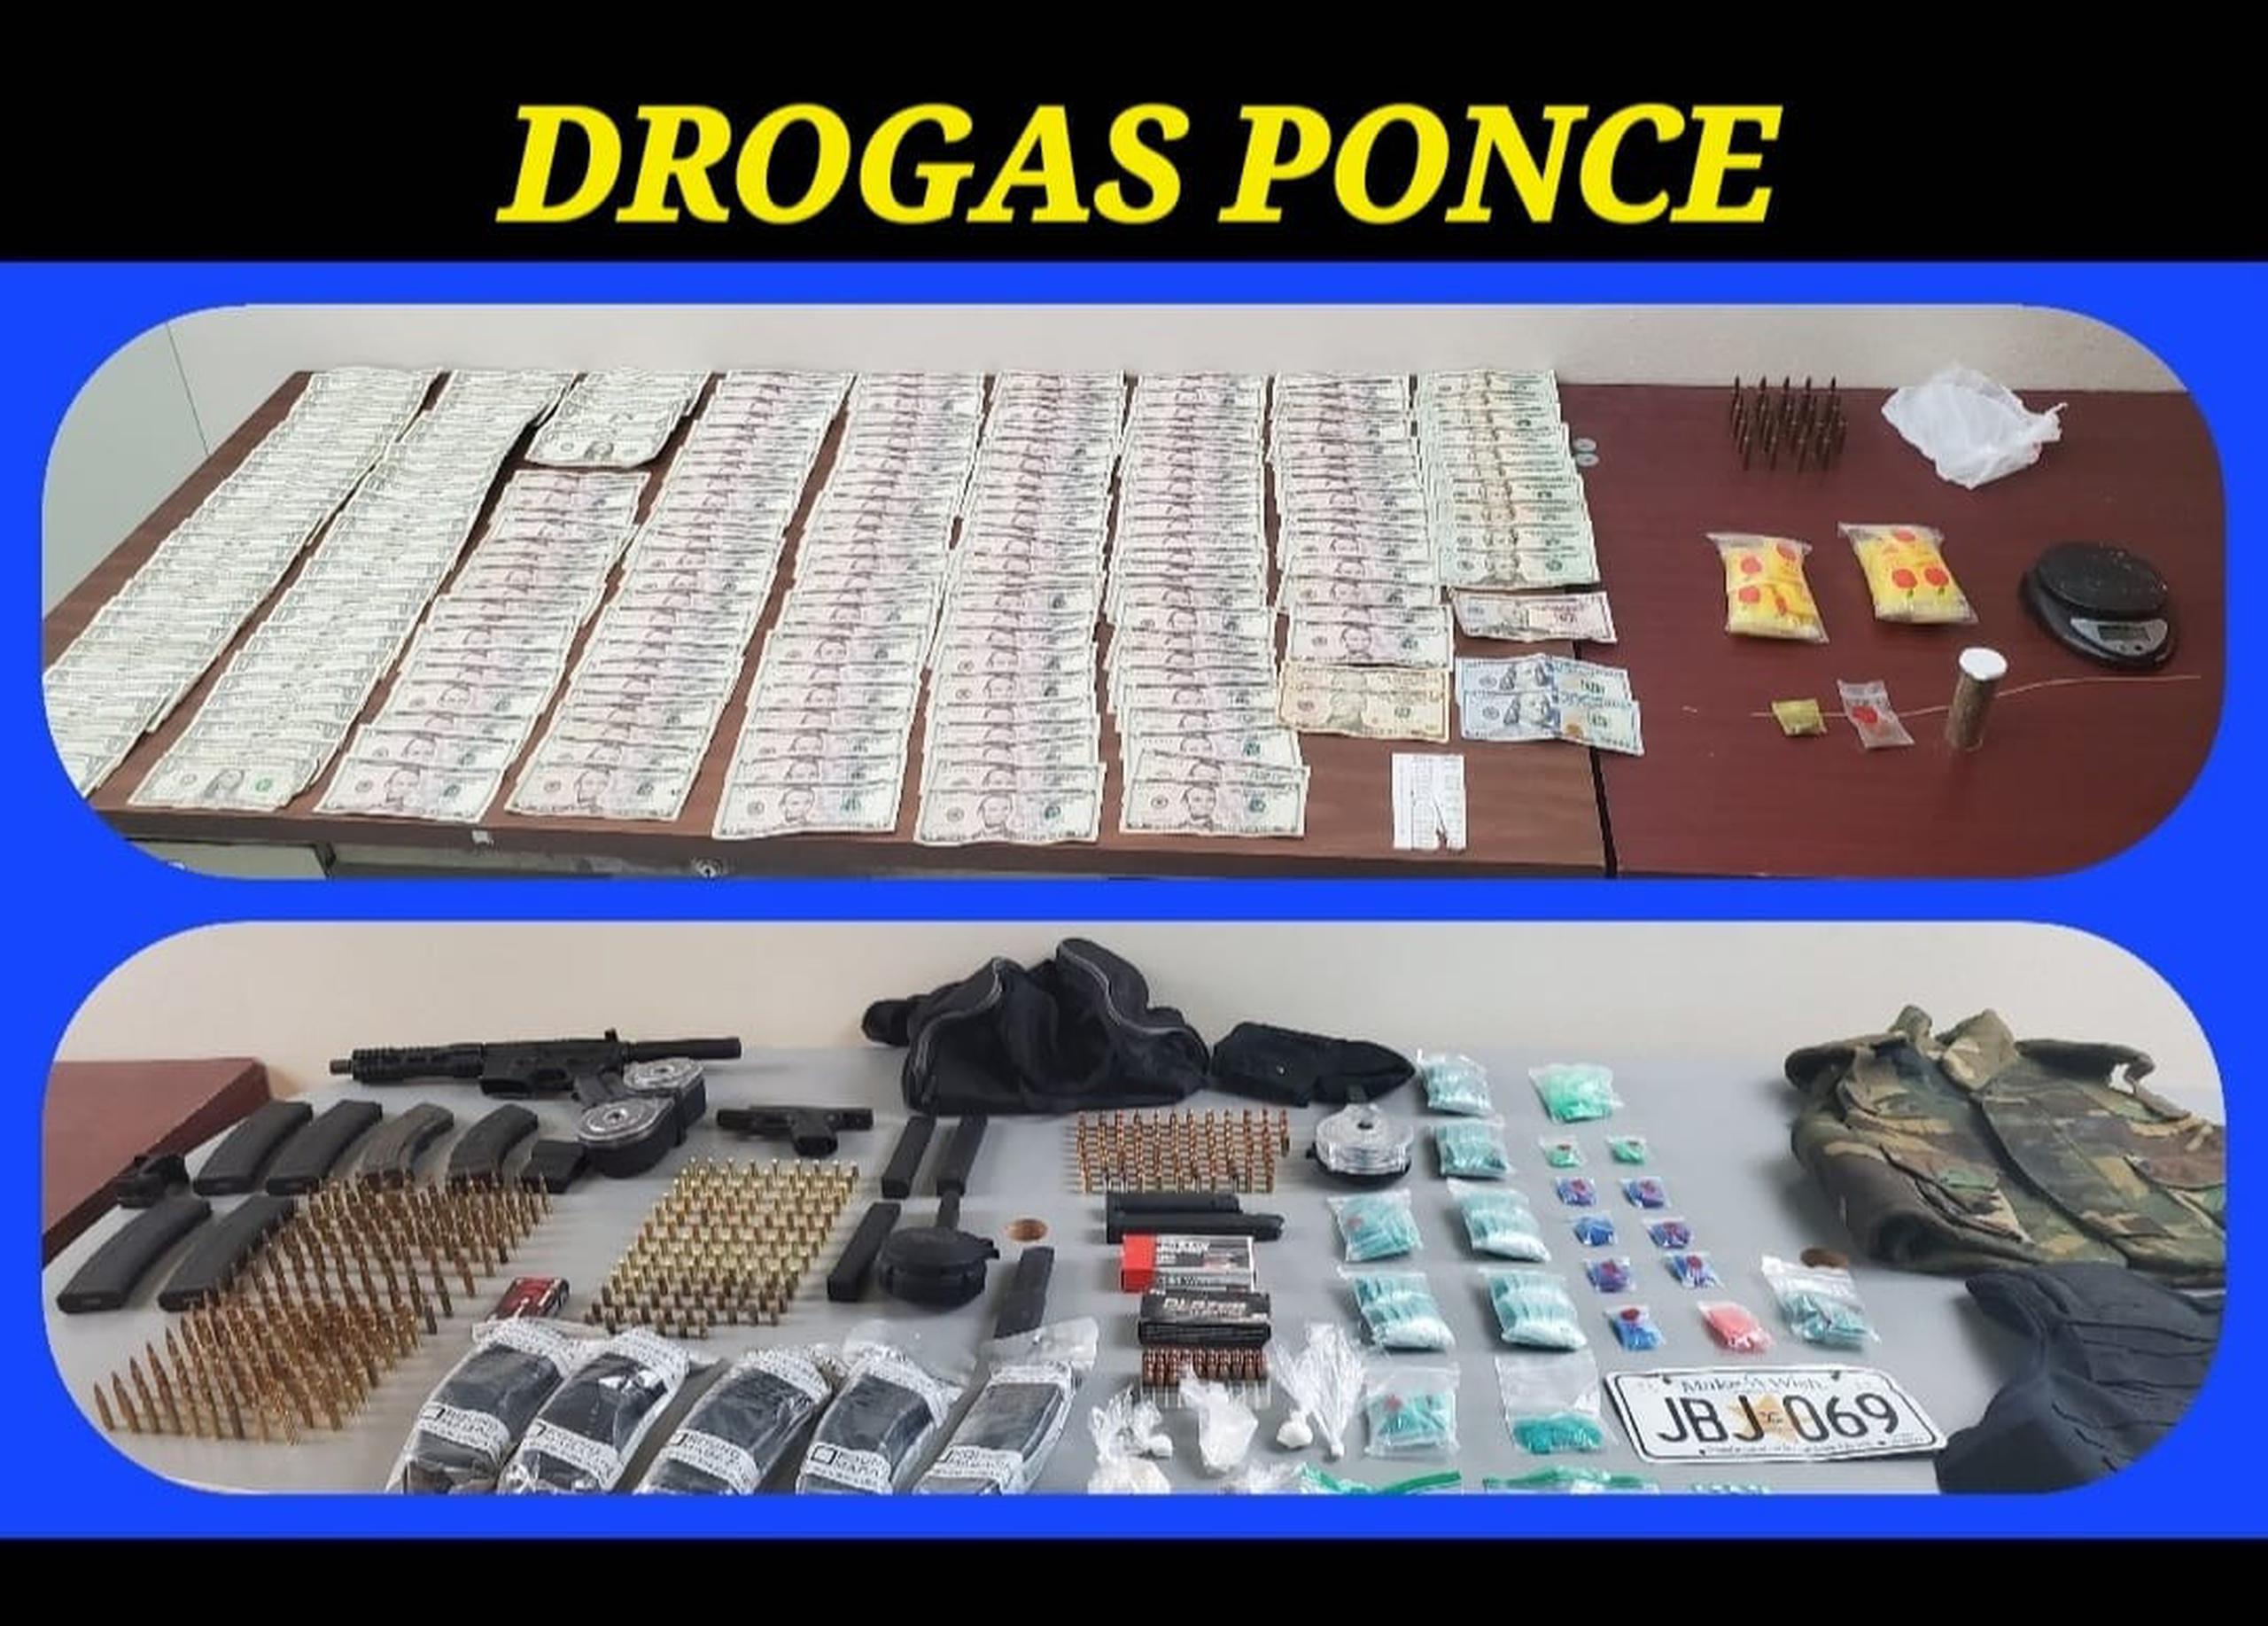 Chalecos antibalas, sustancias controladas, armas ilegales, cargadores, balas y dinero fueron ocupadas durante un allanamiento diligenciado ayer en el residencial La Ceiba, en Ponce.